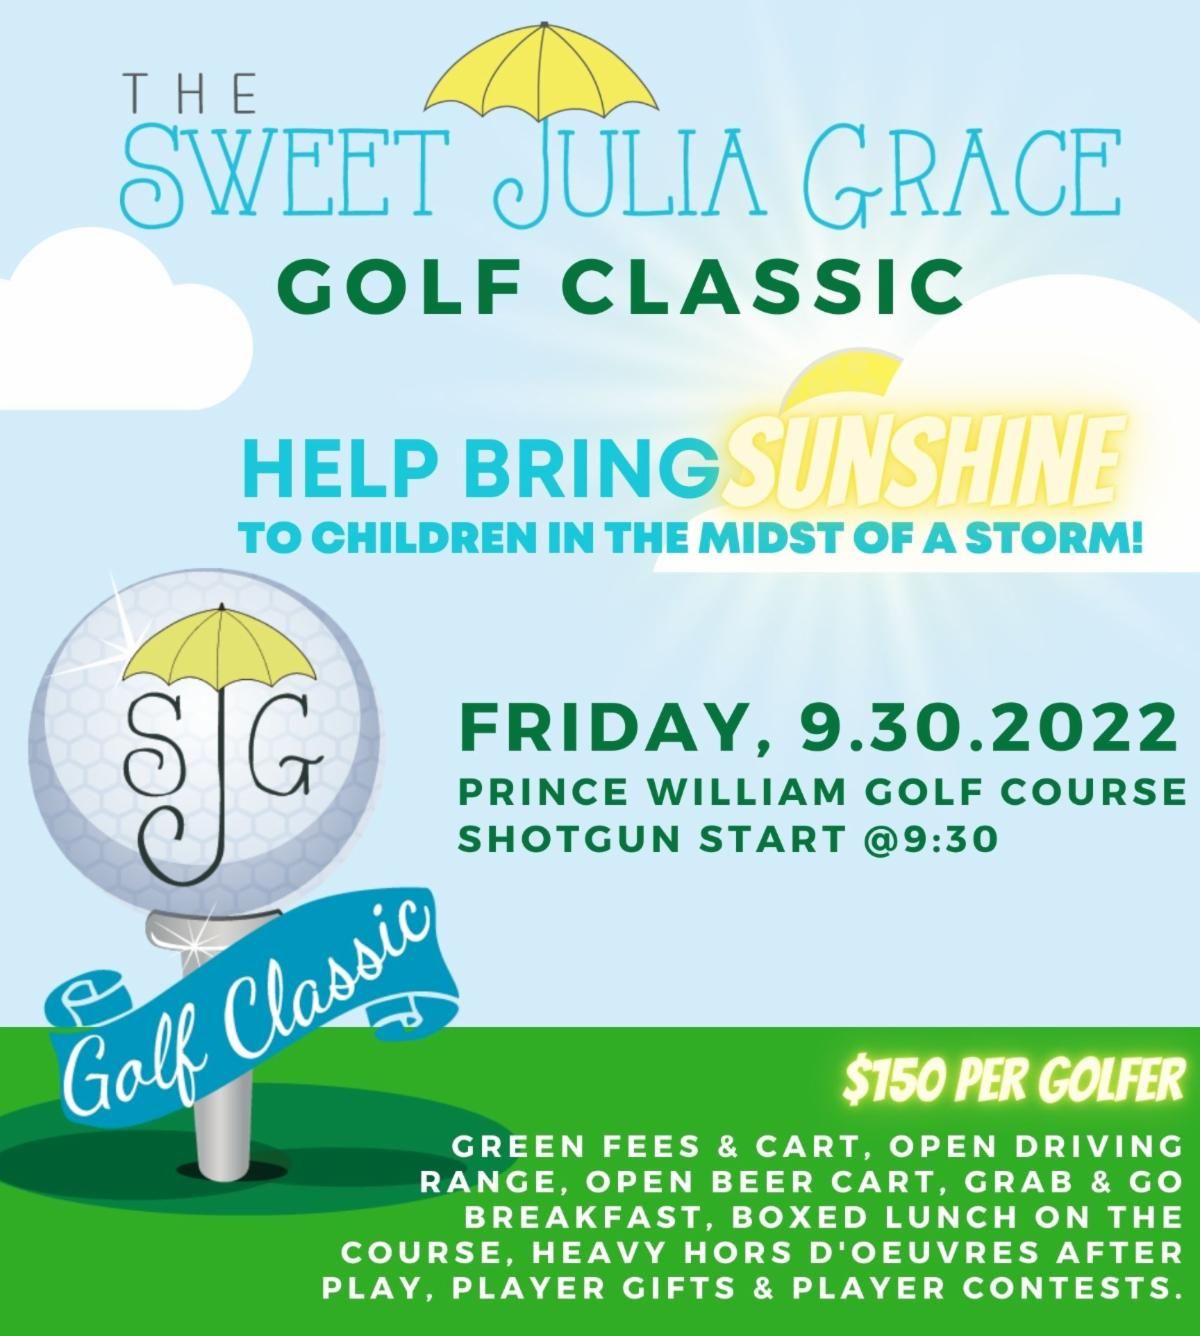 Sweet Juia Grace golf classic 22